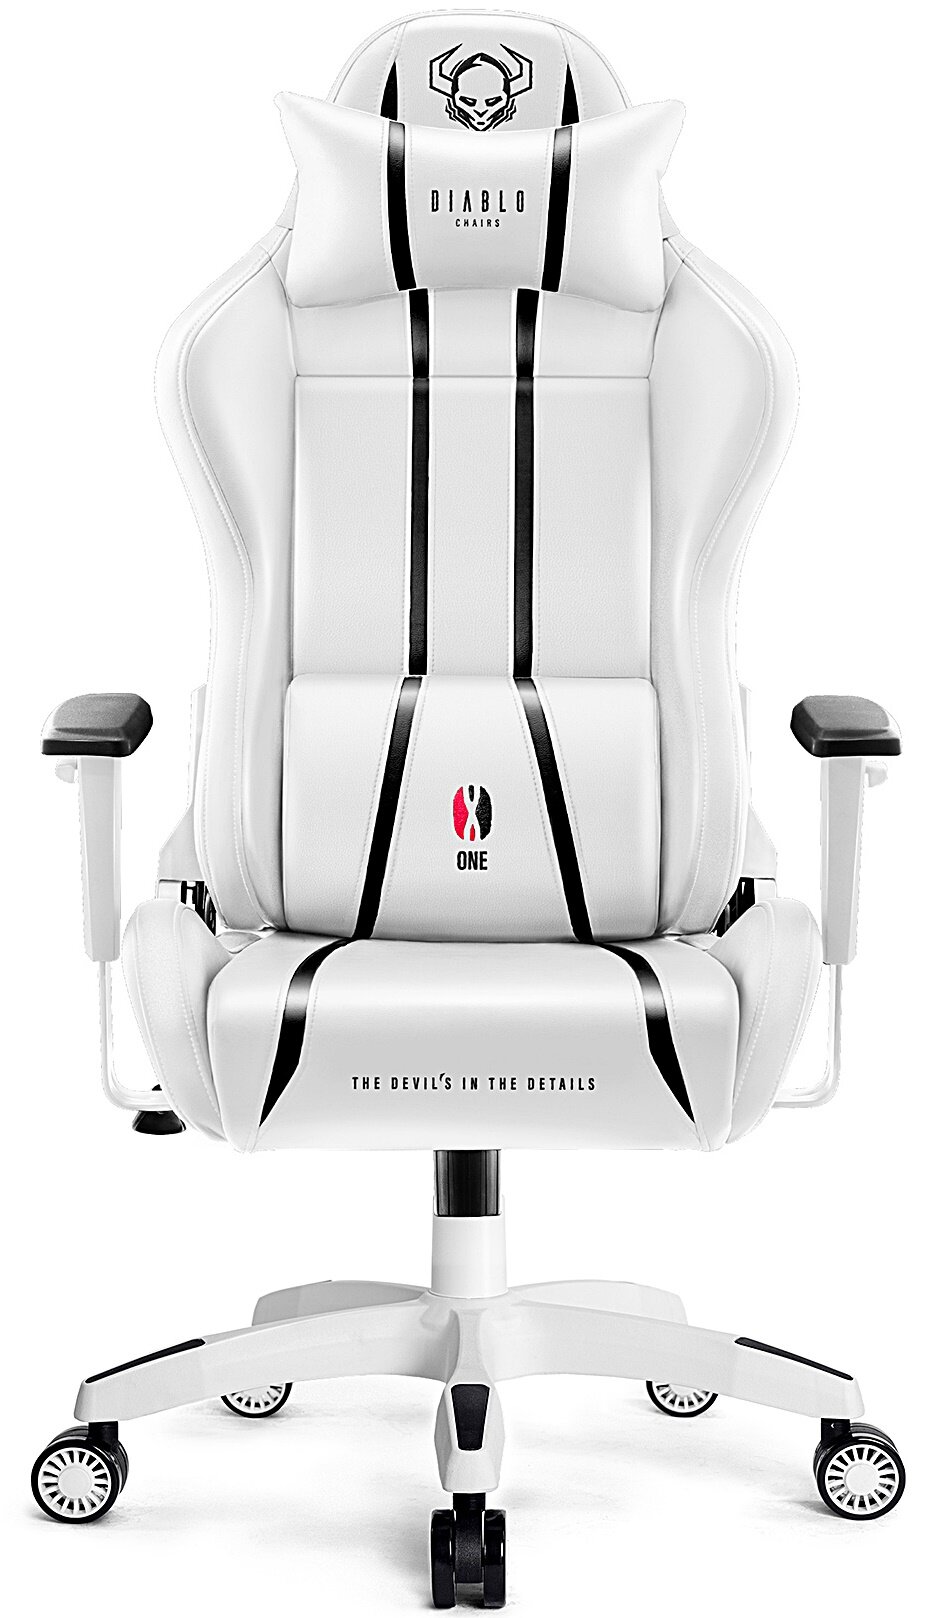 Fotel DIABLO X-ONE 2.0 King Size Biało-czarny - niskie ceny i opinie w  Media Expert